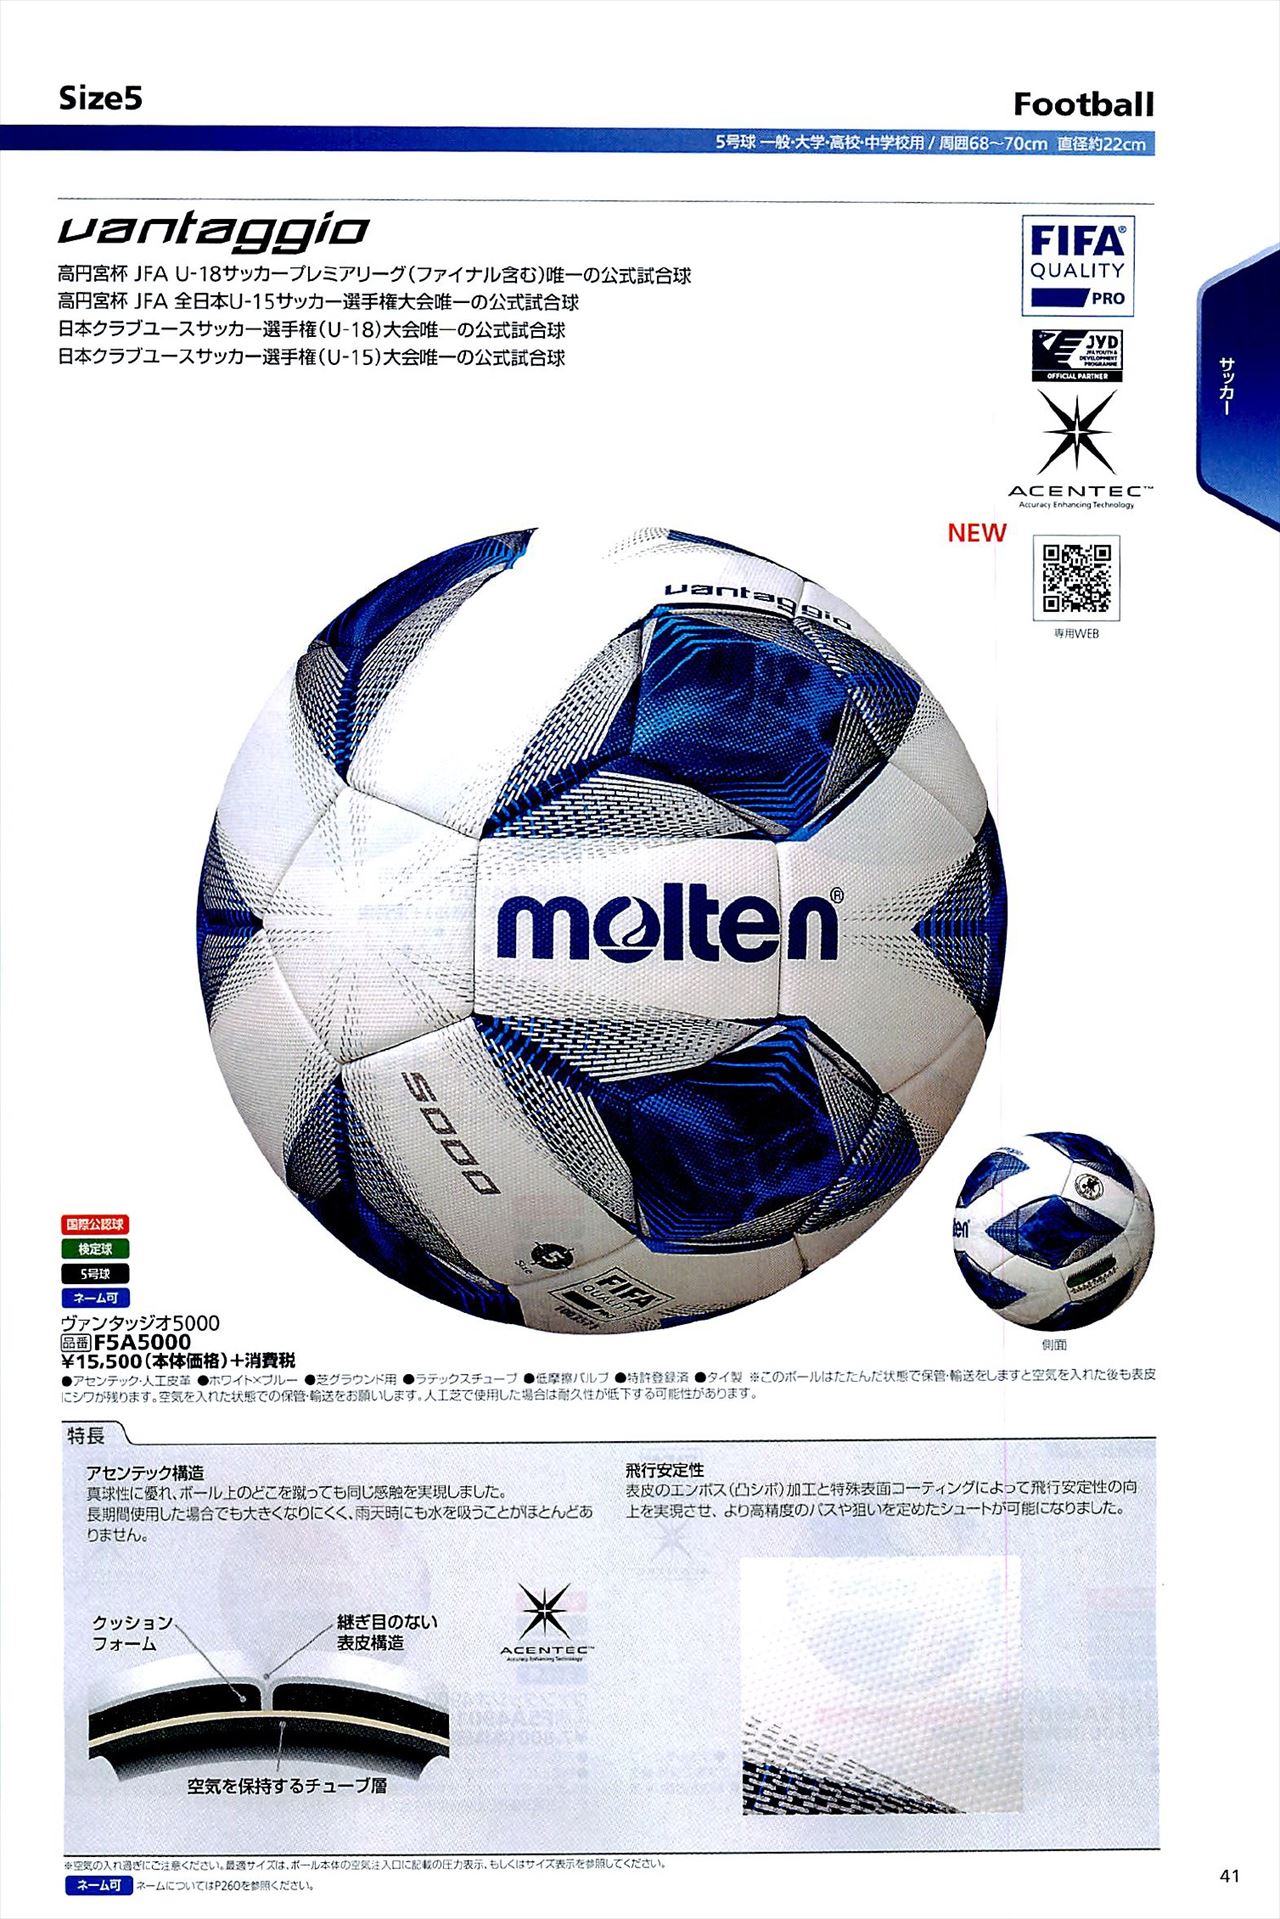 サッカーボール5号球は モルテンカタログ の ページ41 に掲載されています スポーツメーカーカタログ 目次ページ